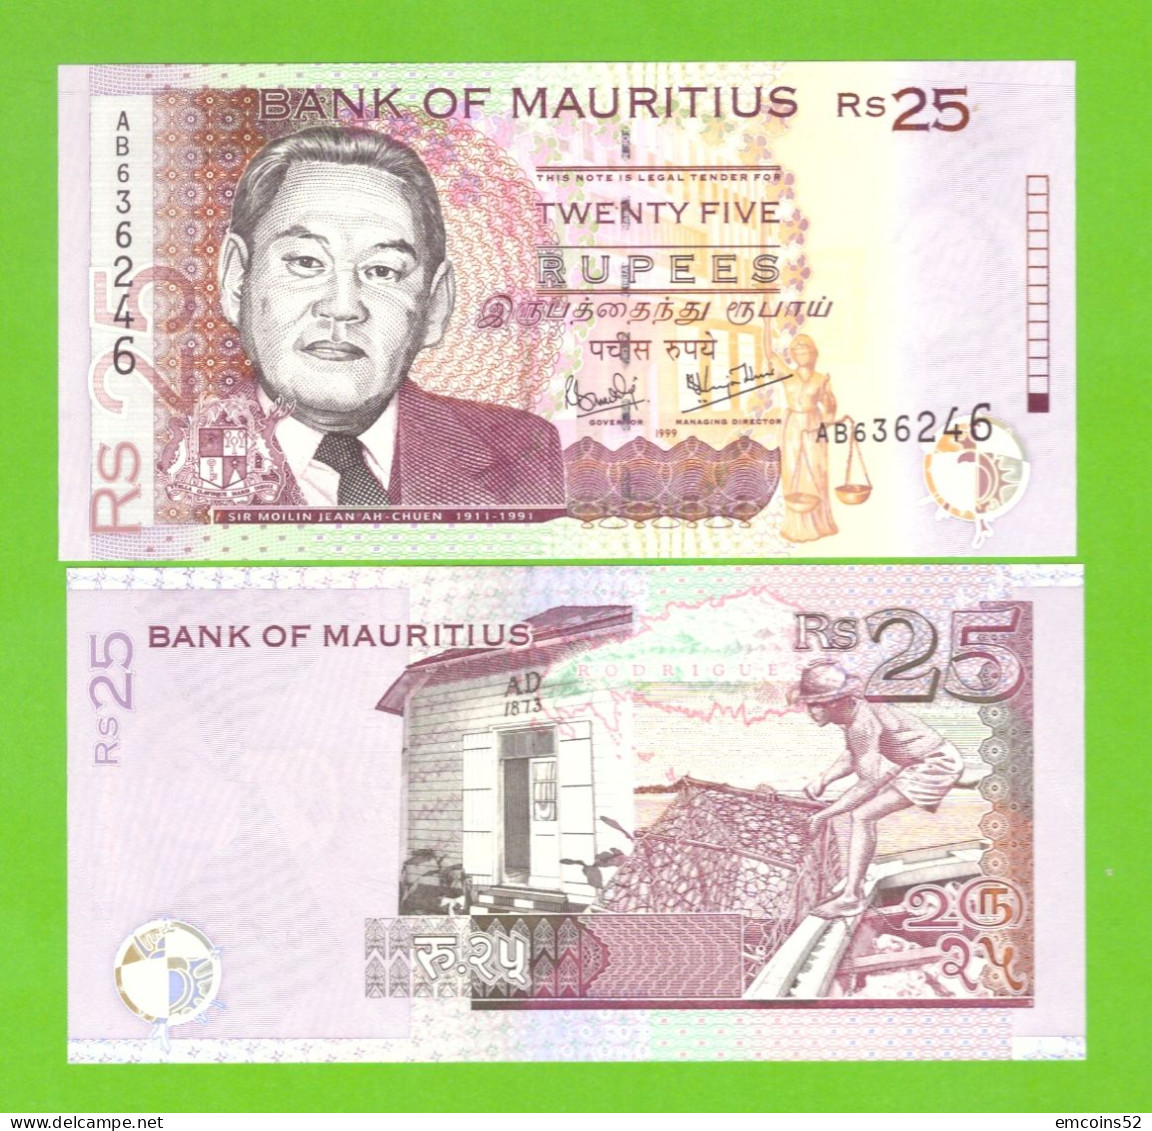 MAURITIUS 25 RUPEES 1999 P-49a UNC - Mauritius